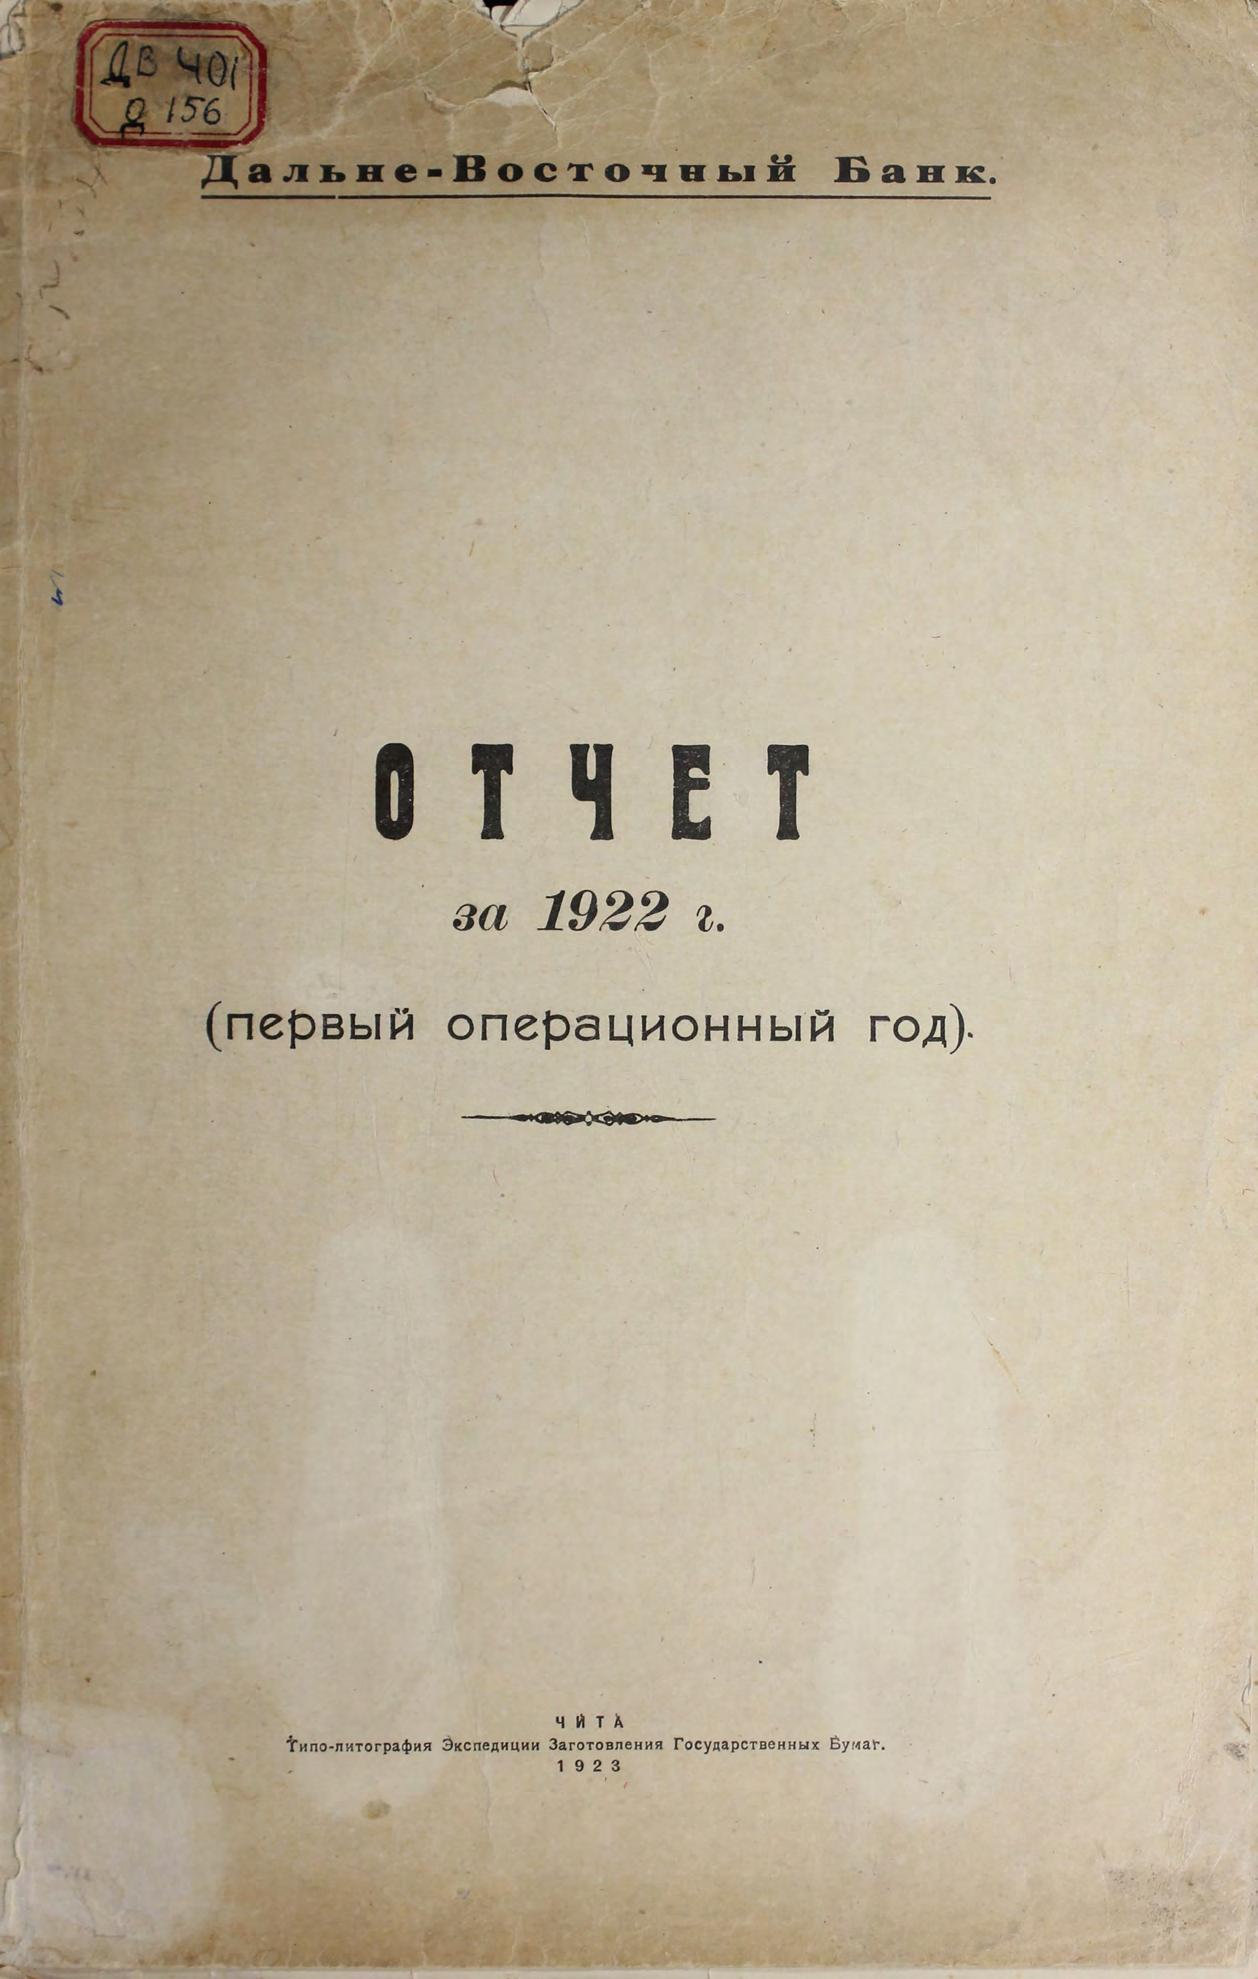 Дальневосточный банк. Отчет за 1922 г. (первый операционный год).